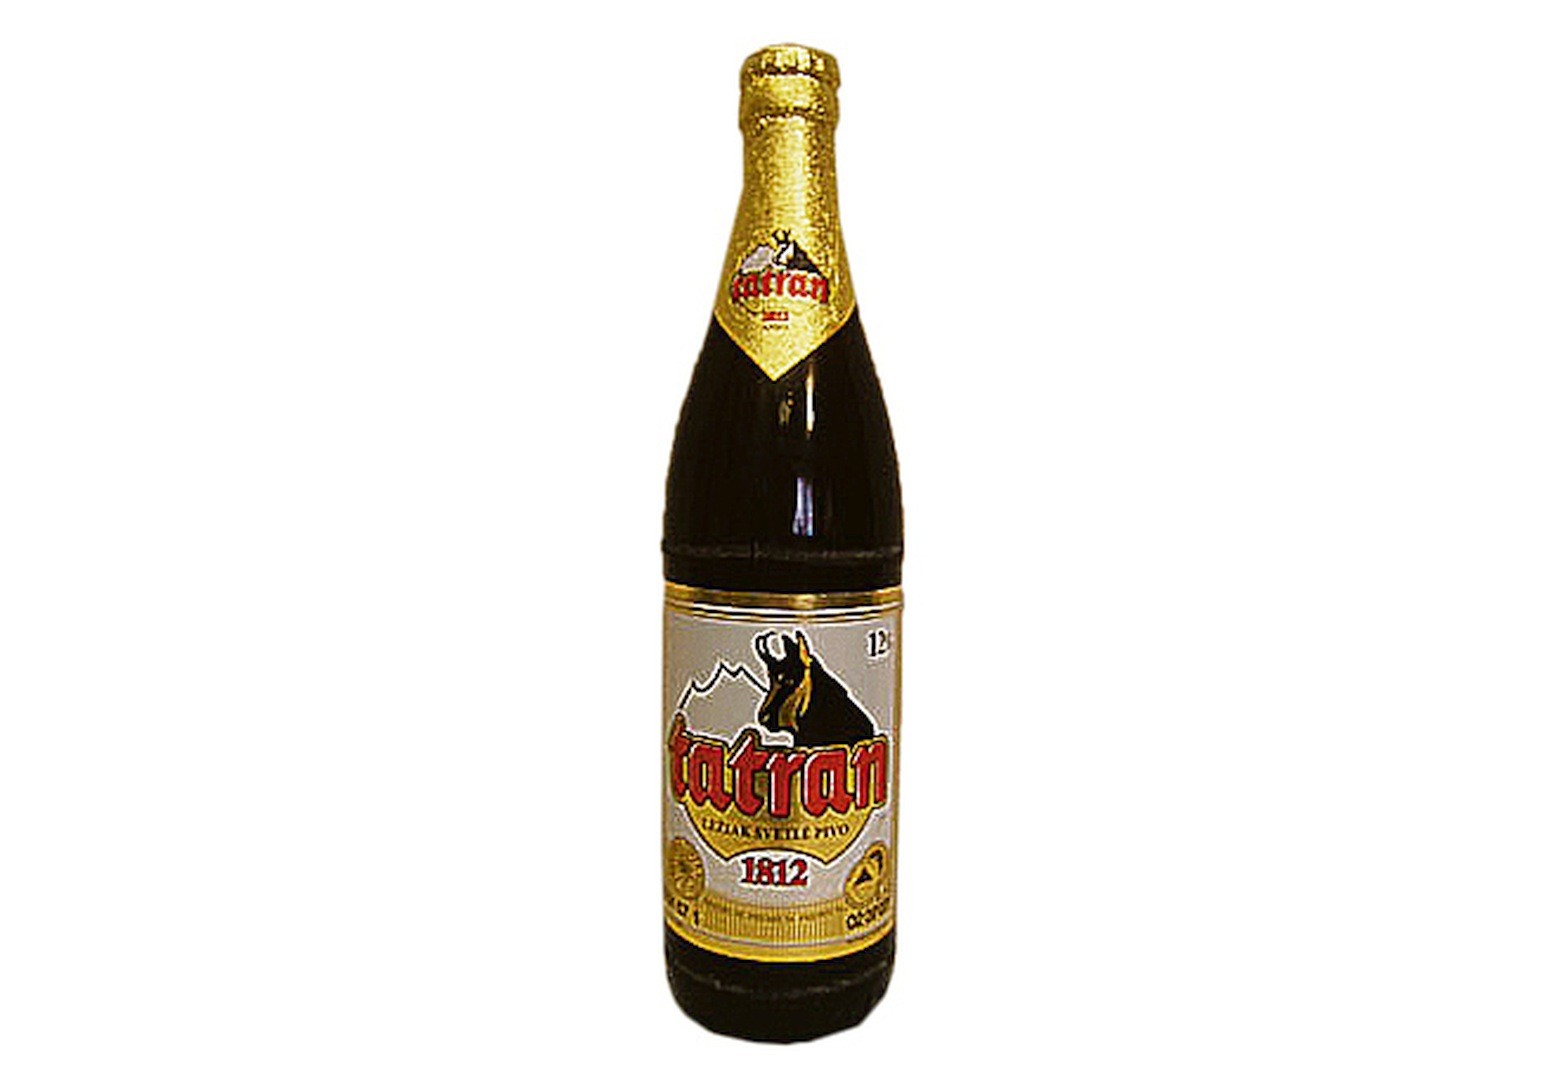 Producent sa odvoláva na tradíciu popradského piva Tatran. Podľa medializovaných informácií ho však varia v Poľsku. Ako informuje stránka o pive, pivovar skončil s výrobou ešte v roku 2007 a pivo sa ďalej varí ako „licenčné“. Kam sa však výroba premiestnila, nie je jasné. Pivovar vlani pripustil, že ho varí v susednom Poľsku, podľa všetkého v pivovare Van Pur v Rakszawe. Na stránke Združenia výrobcov piva a sladu je pivovar uvedený len ako Tatranská sladovňa. Po otvorení stránky sa objavia údaje o firme Pilsberg, s. r. o. O tom, či sa pivo varí v Poľsku, stránka Pilsbergu neinformuje.    